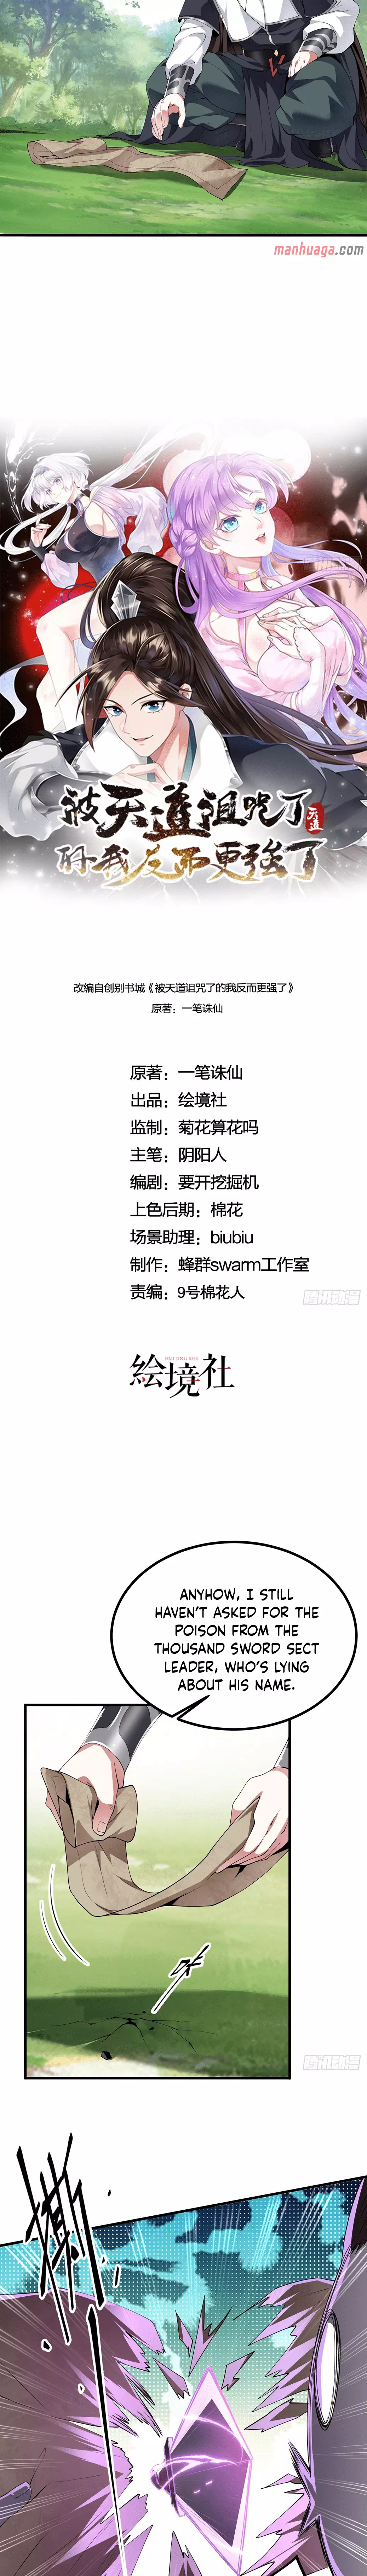 Bei Tiandao Zuzhoule De Wo Fan'er Geng Qiangle - 23 page 7-91df1dc2